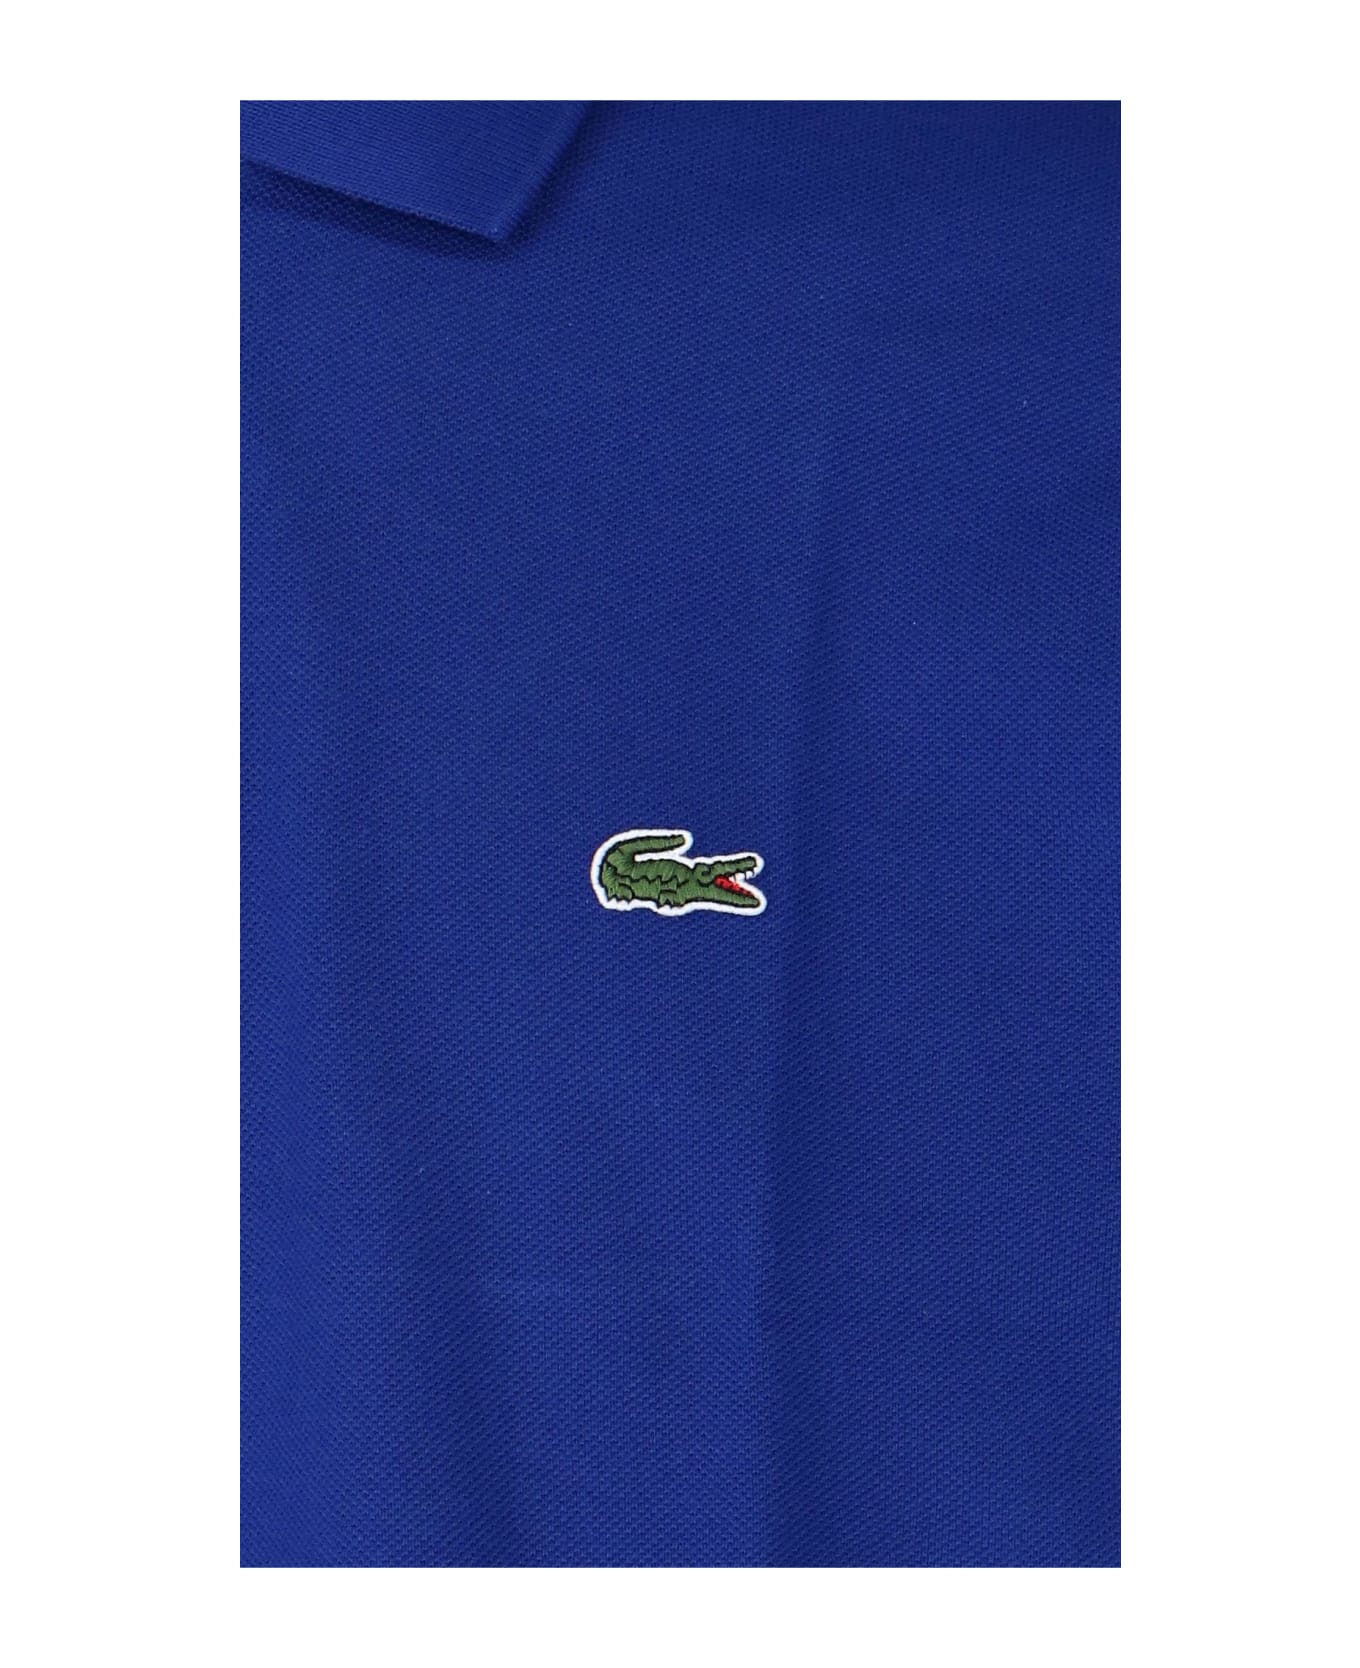 Lacoste Classic Design Polo Shirt - Inchiostro